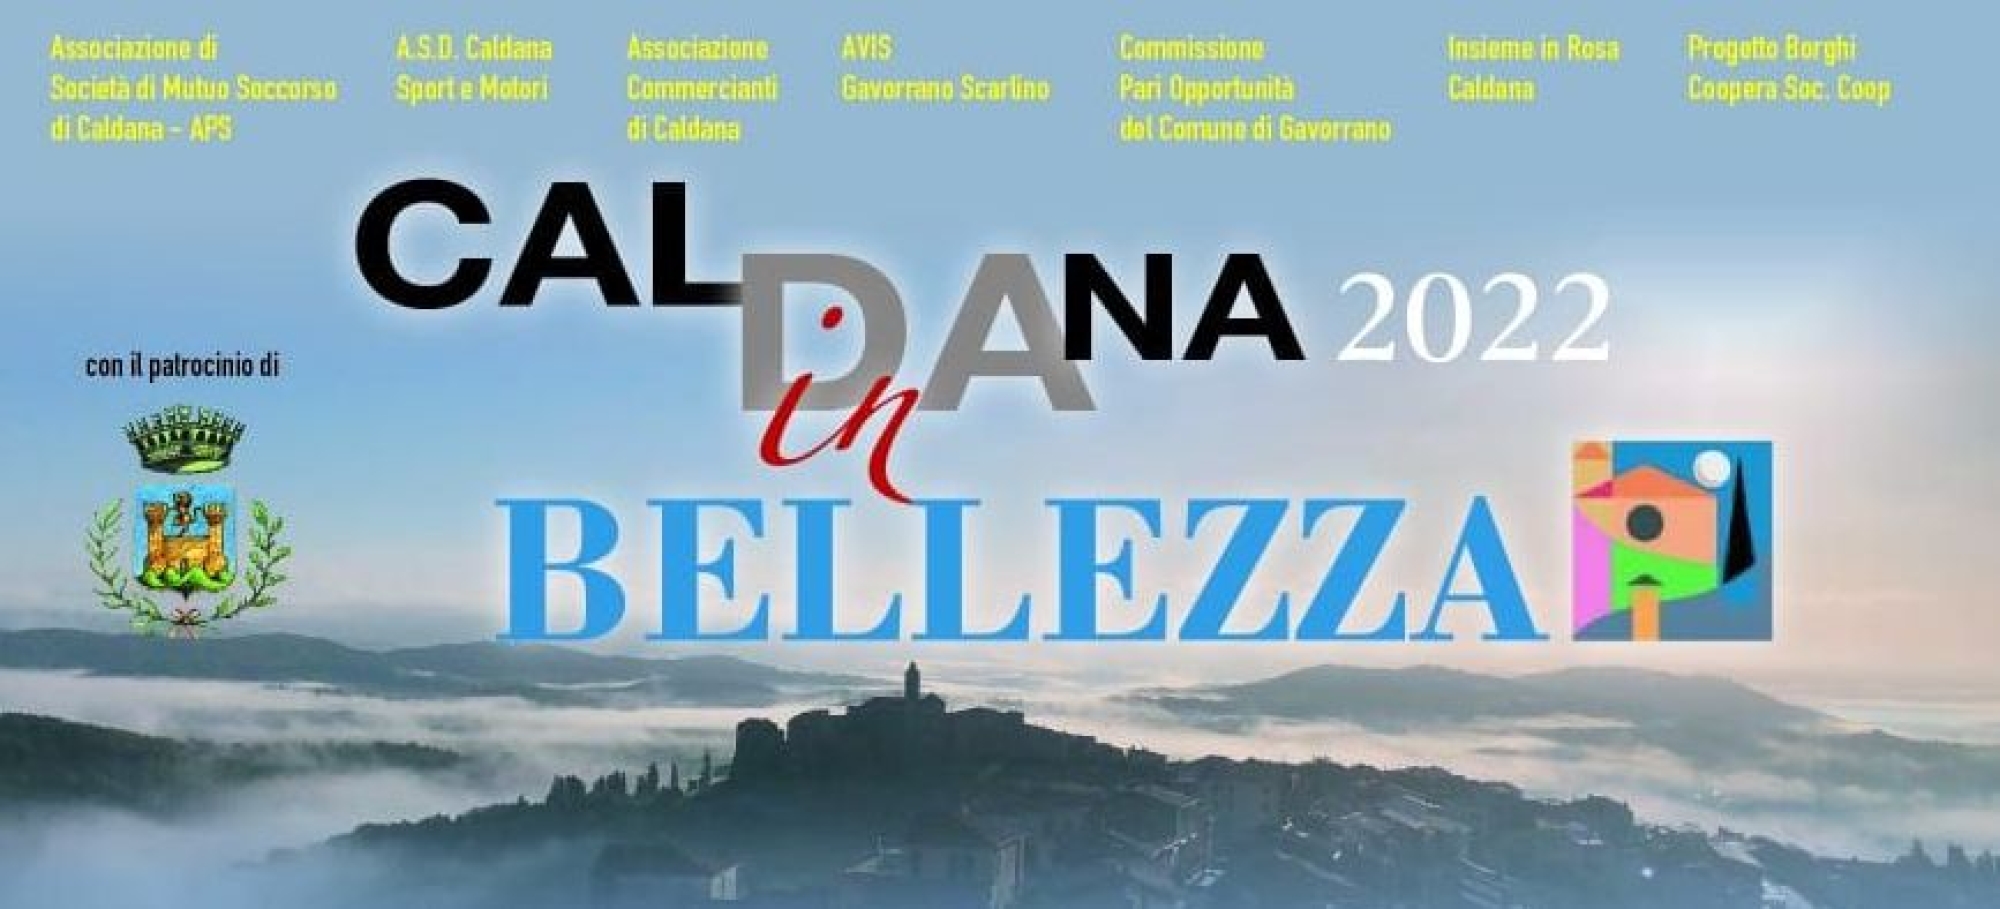 Caldana in Bellezza 2022